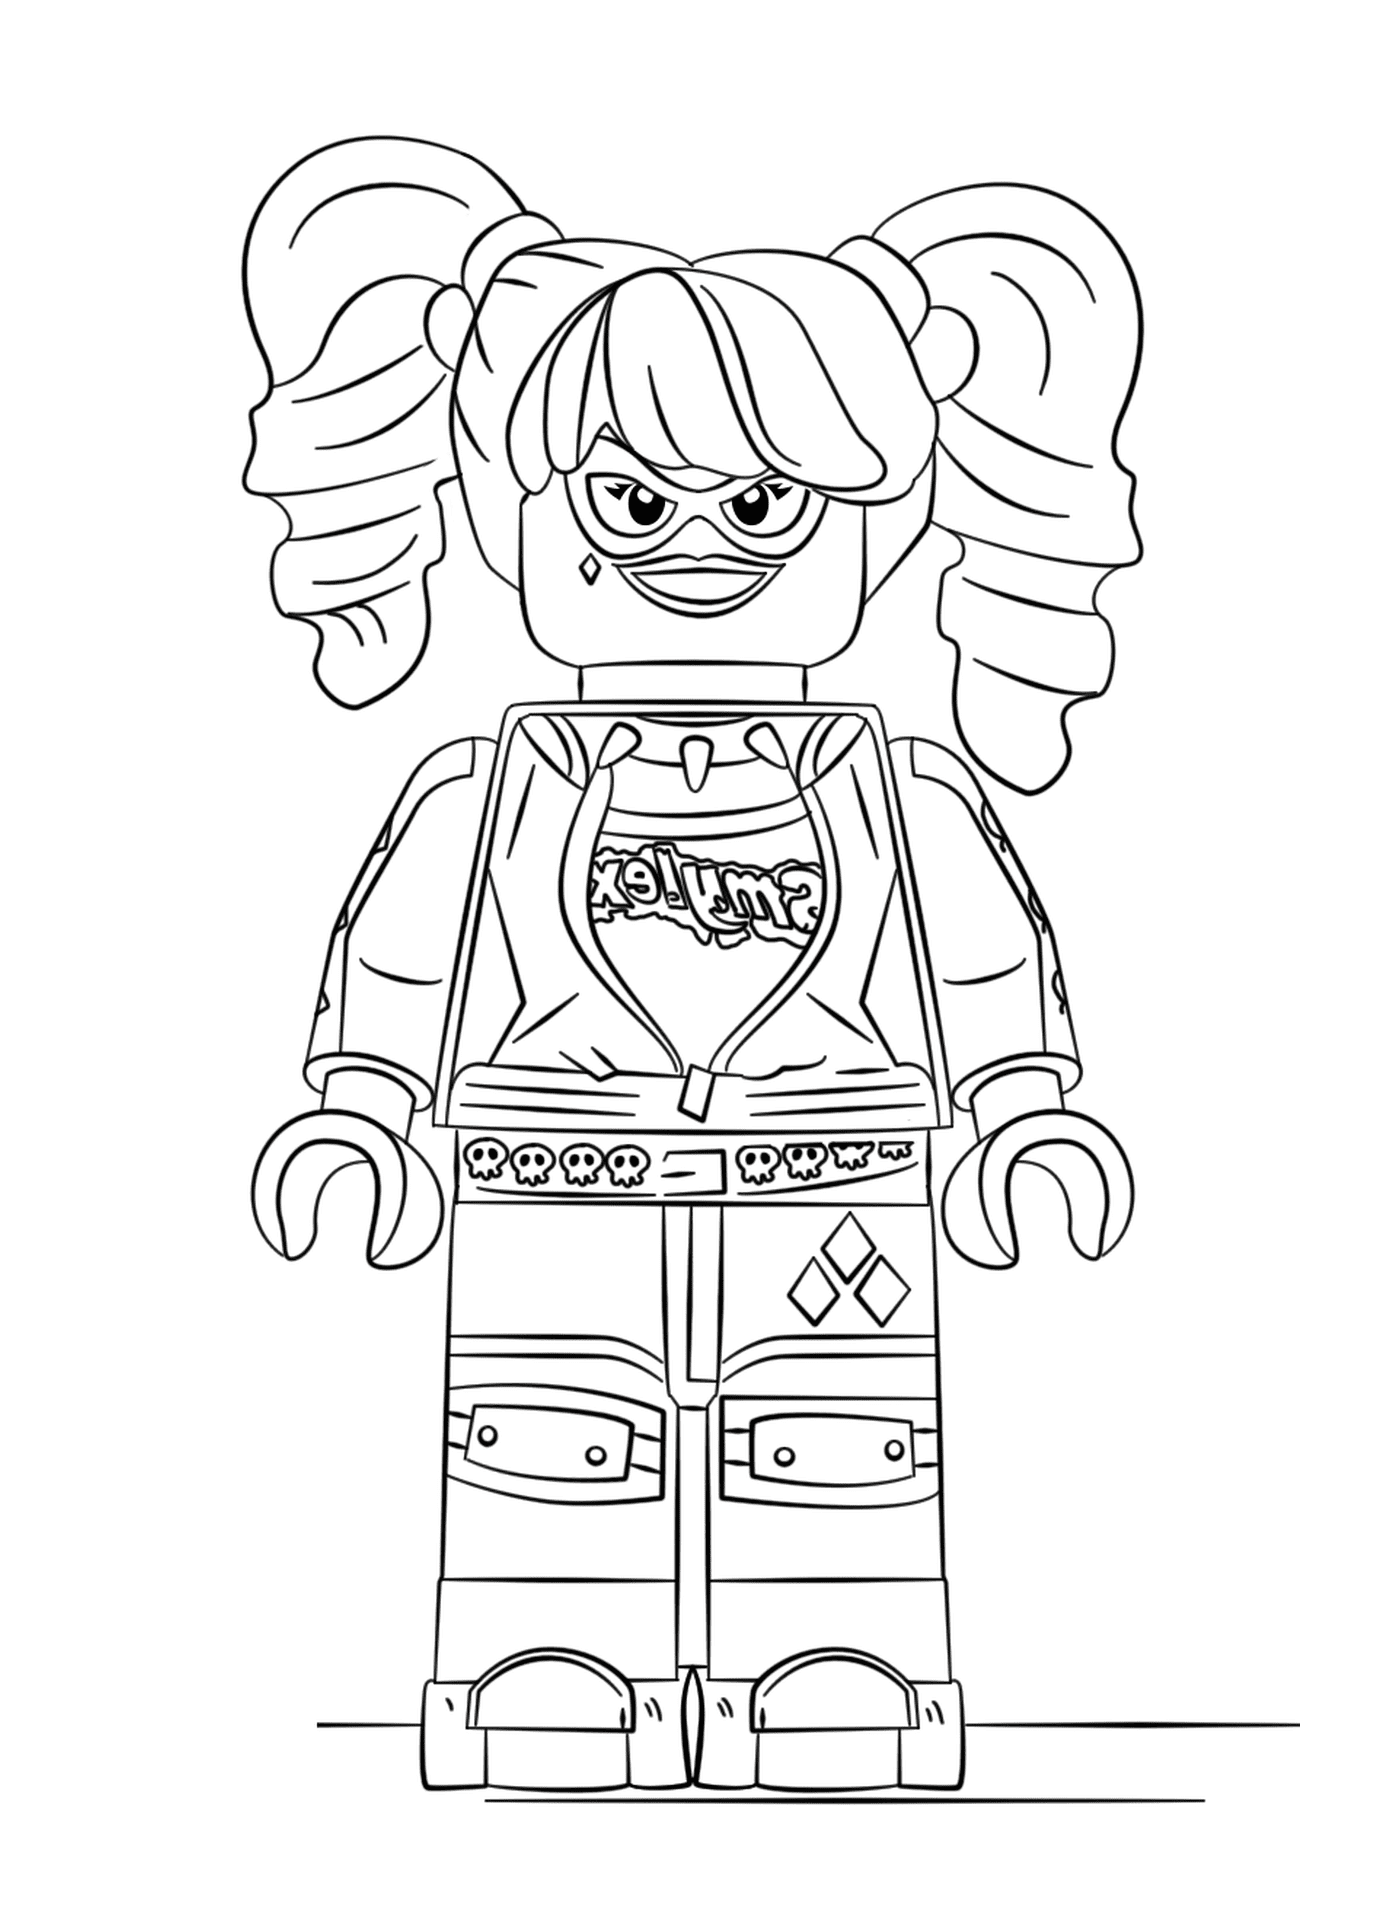  लेगो लड़की उसके चेहरे पर एक मुस्कान के साथ 